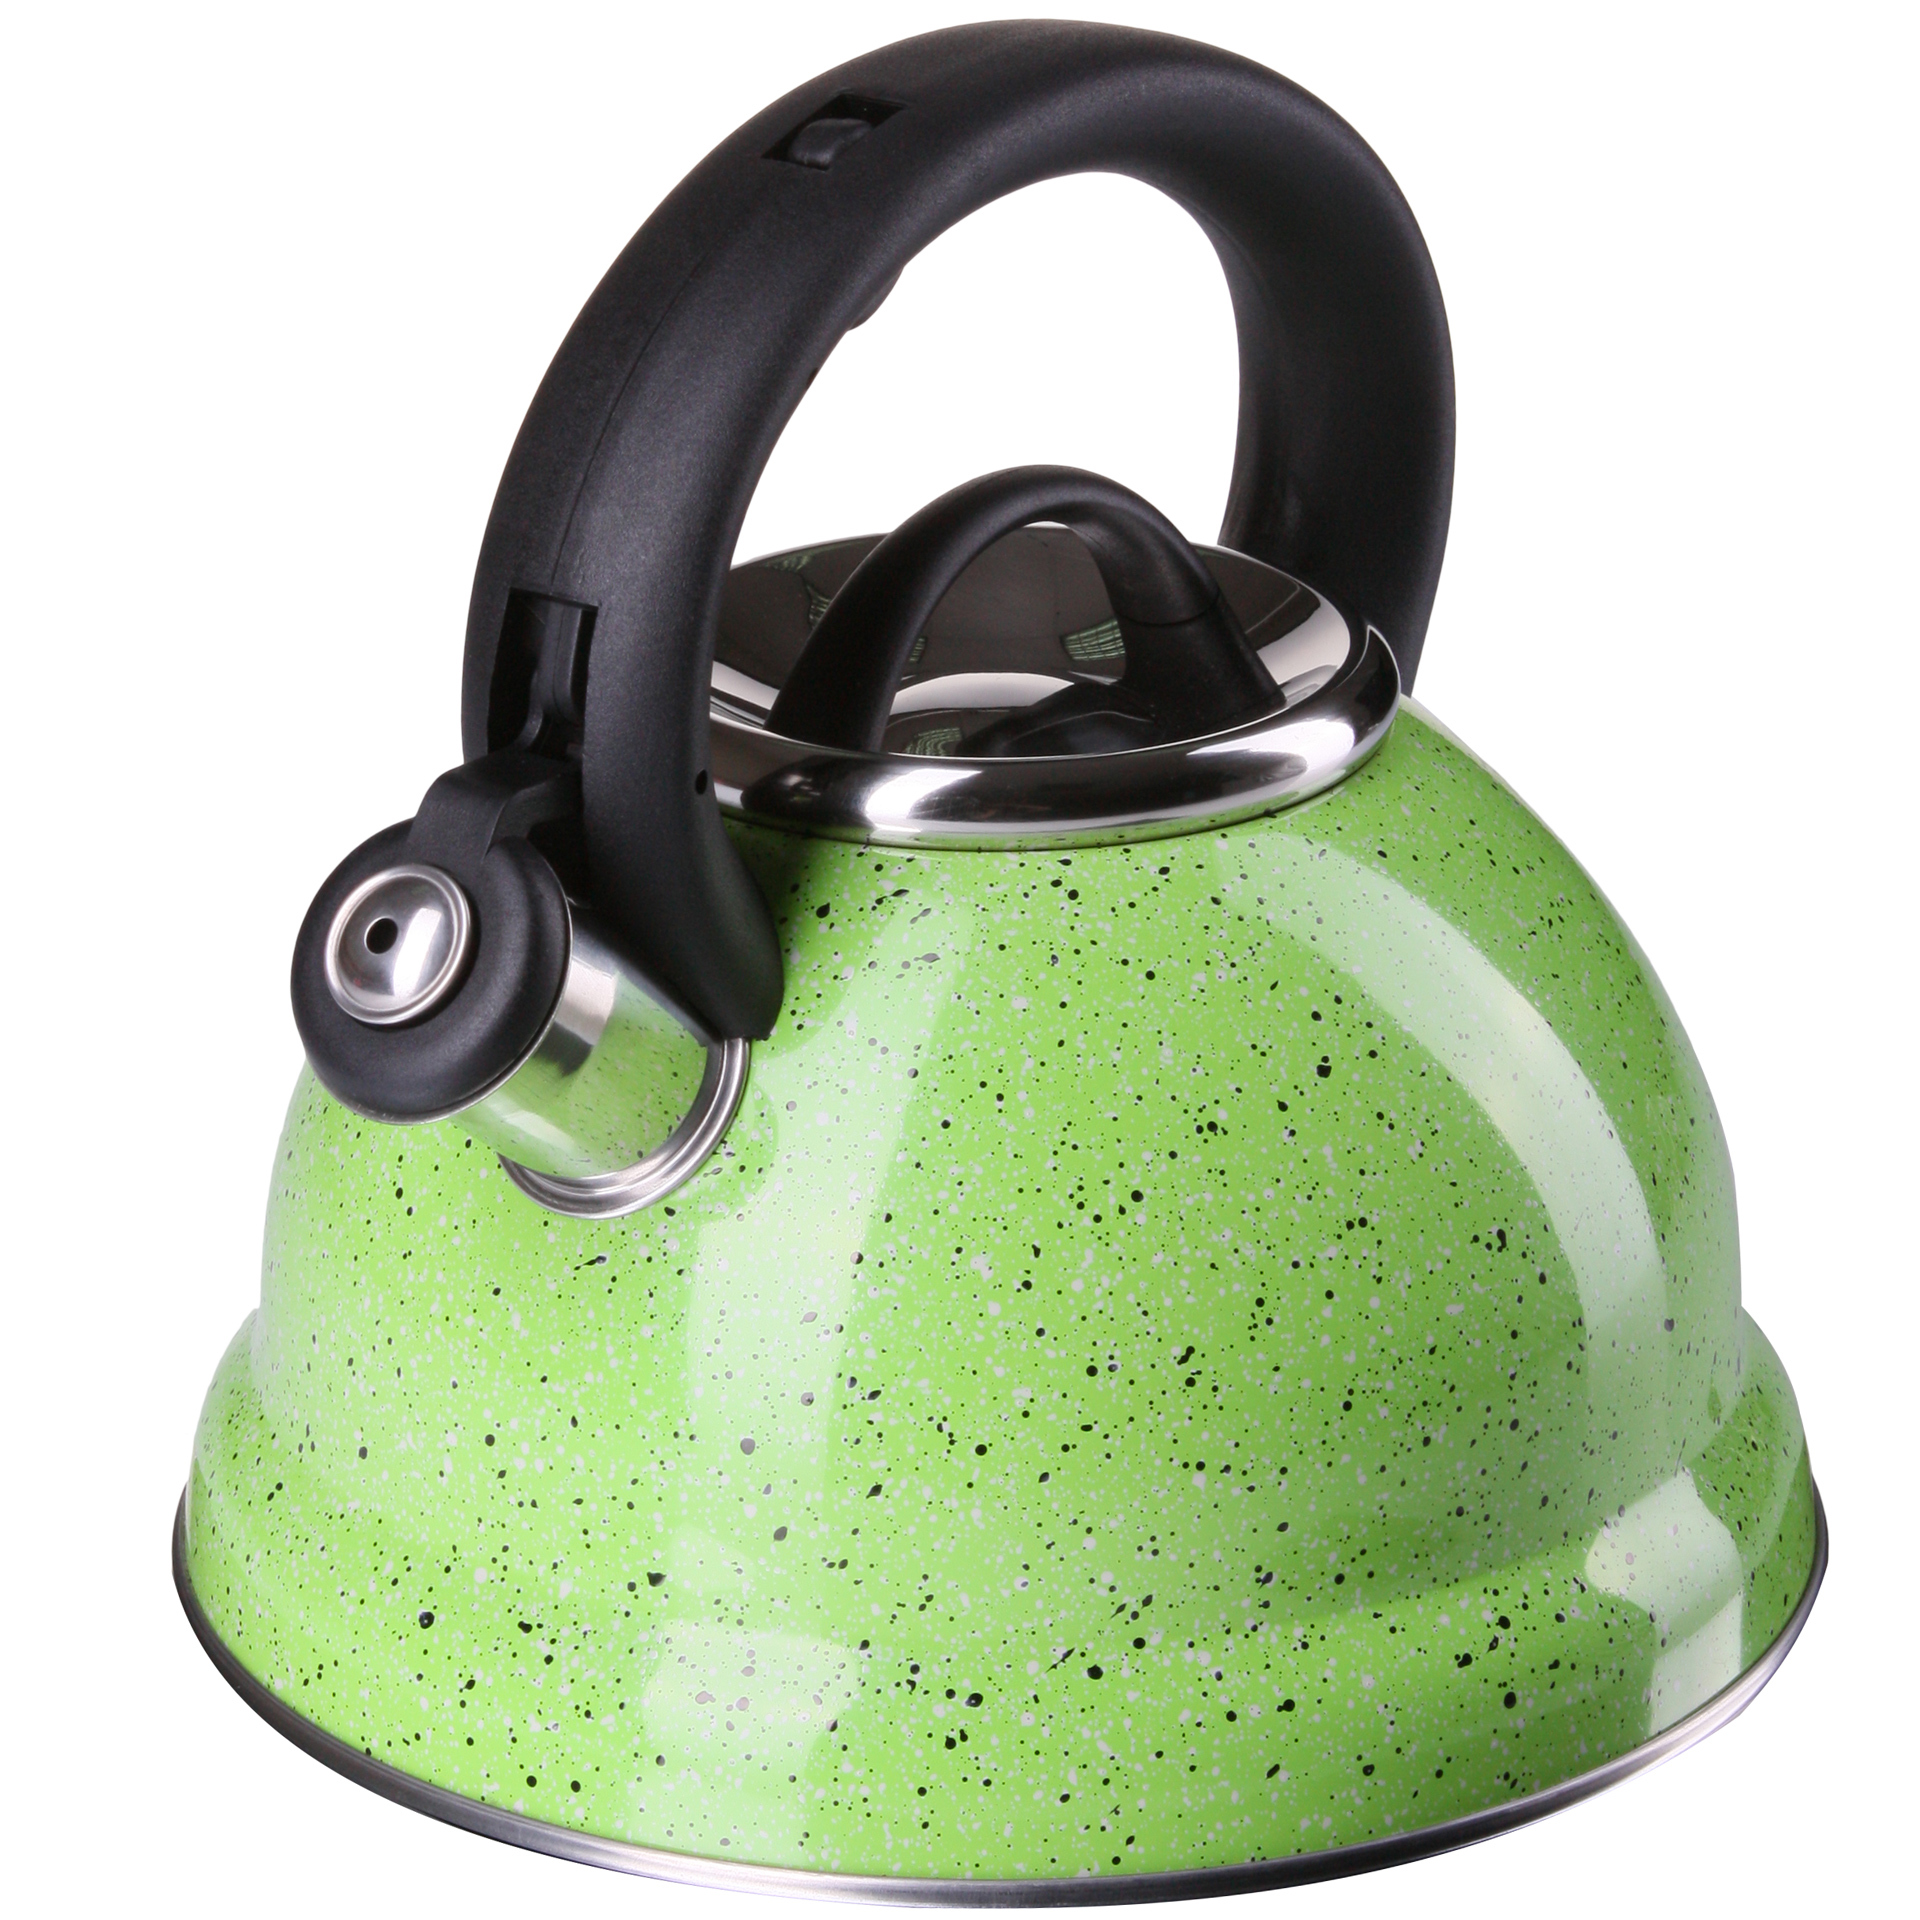 90169085 Чайник для плиты со свистком 2.8 л нержавеющая сталь зеленый STLM-0122122 MAYER&BOCH